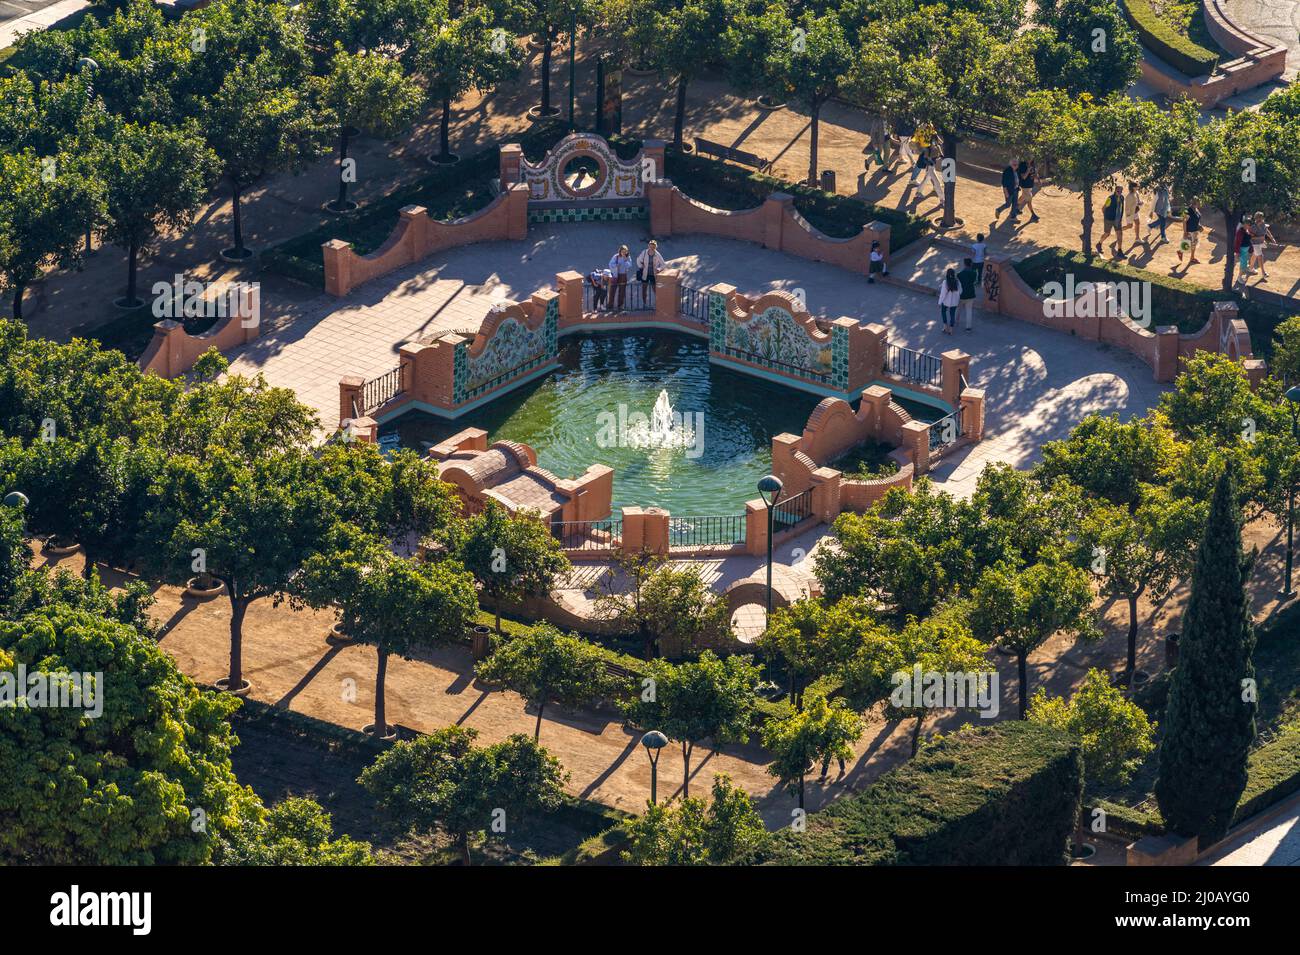 Parkanlage mit Brunnen Jardines de Pedro Luis Alonso von oben gesehen, Málaga, Andalusien, Spanien  |  Jardines de Pedro Luis Alonso gardens with foun Stock Photo